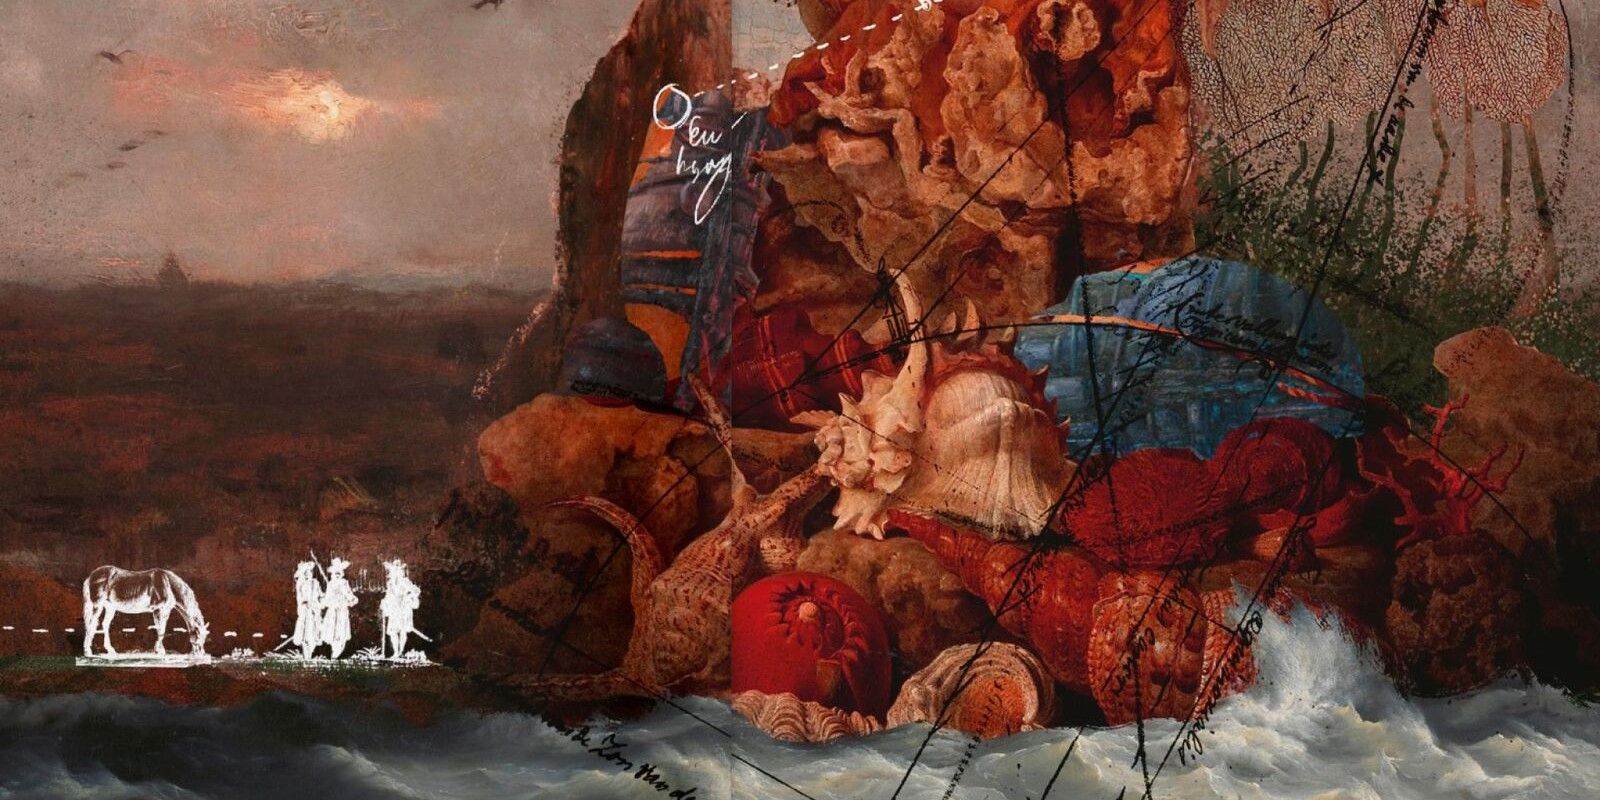 Arte para um jogo de mesa chamado Into the Odd, mostrando uma ilha que parece ser feita de fungos gigantes brotando das ondas do oceano, sobreposta com anotações que podem ser vistas em um mapa onde um curso foi traçado.